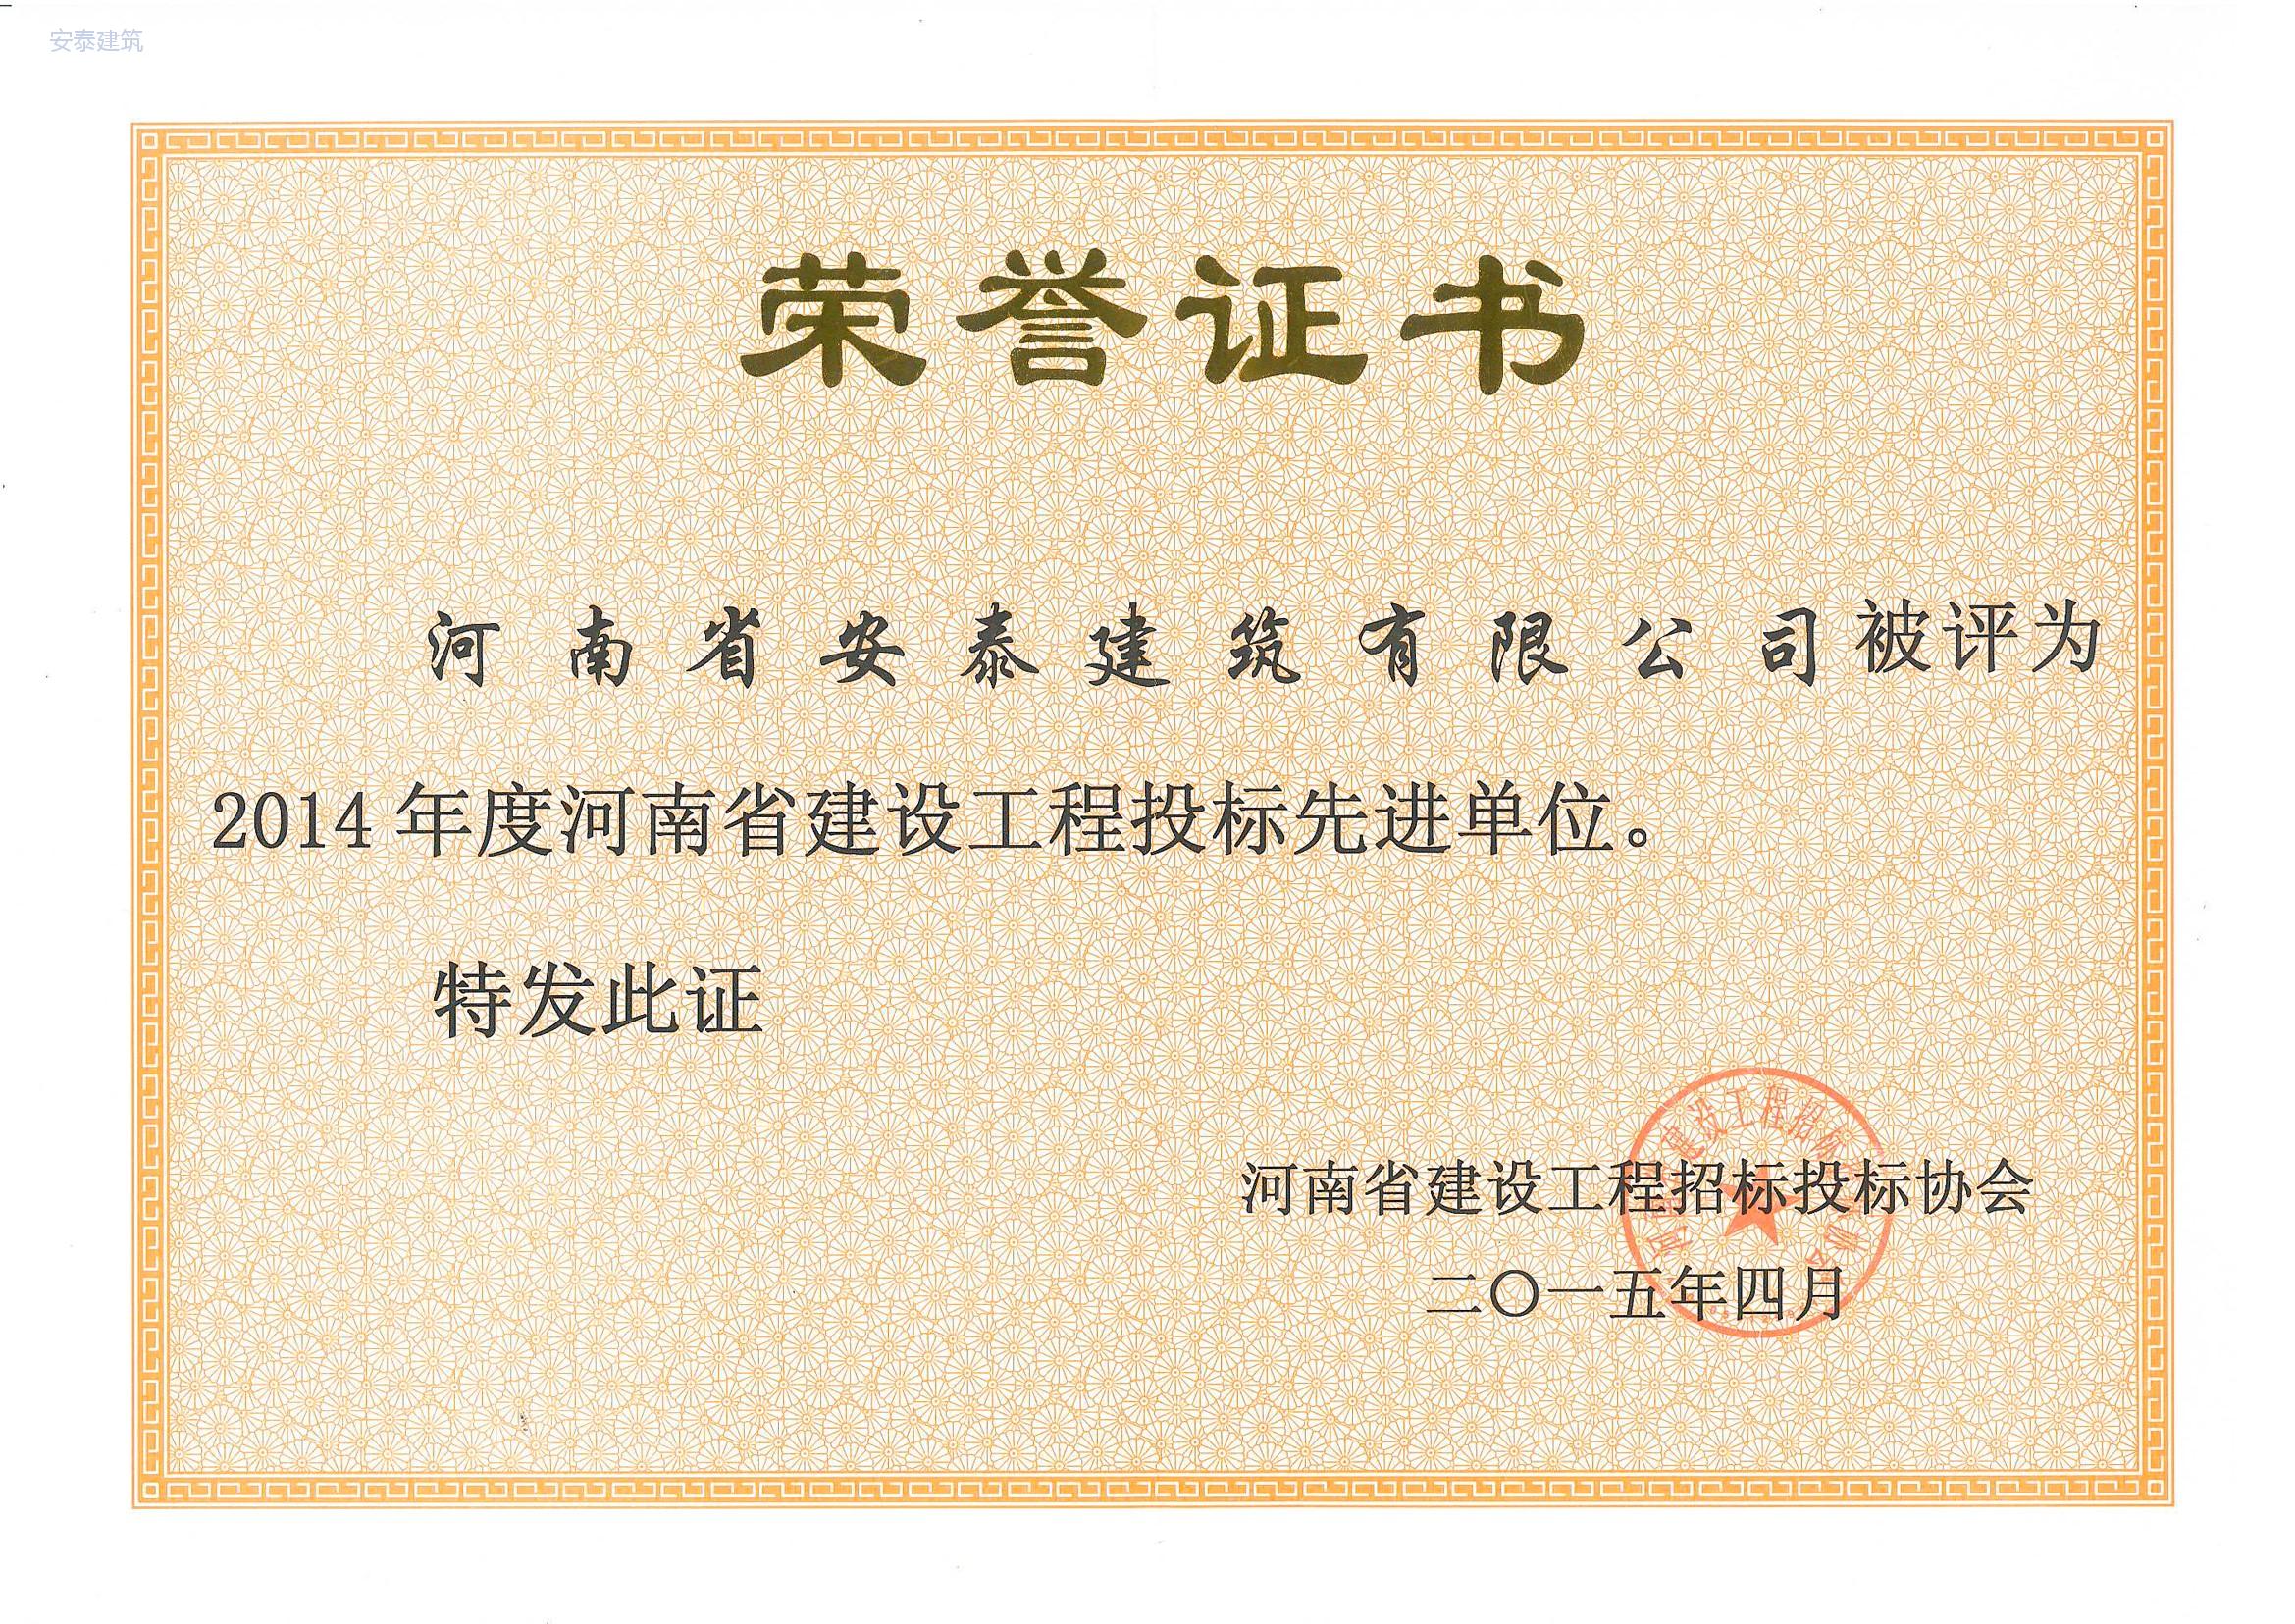 2014年度河南省建设工程投标先 进单位